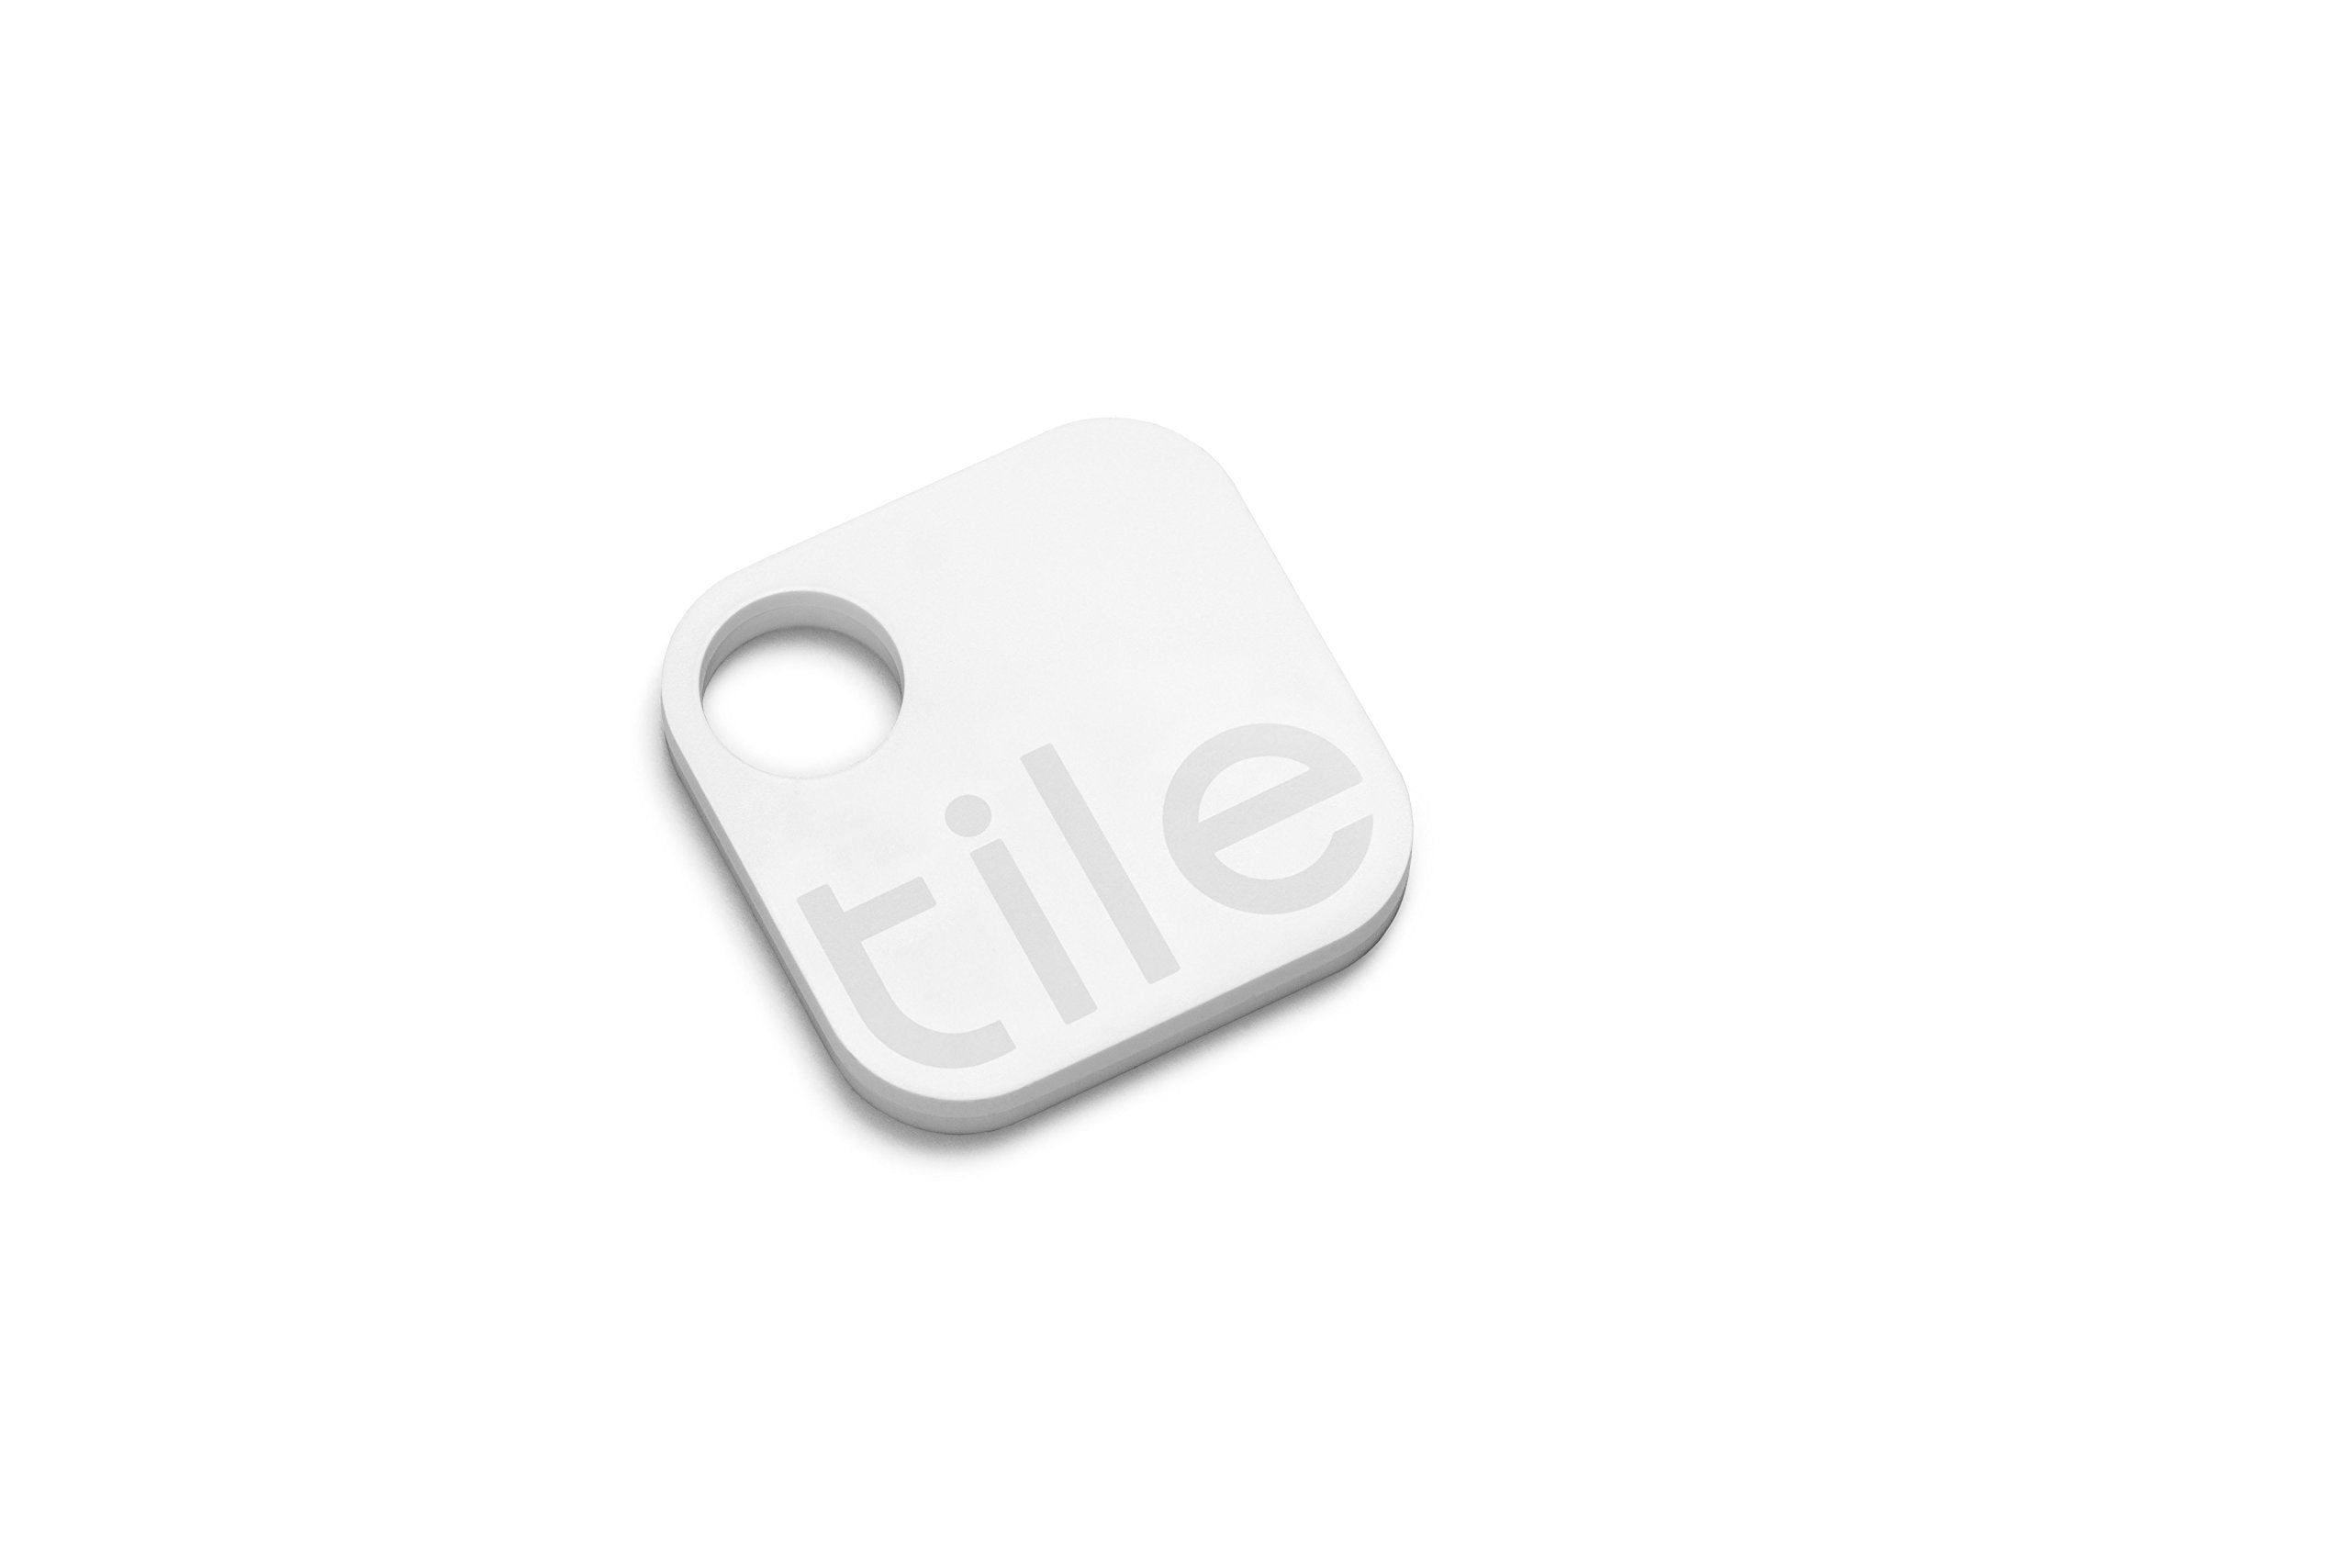 Tile (Gen 2) - Phone Finder. Key Finder. Item Finder - 1 Pack  - Very Good